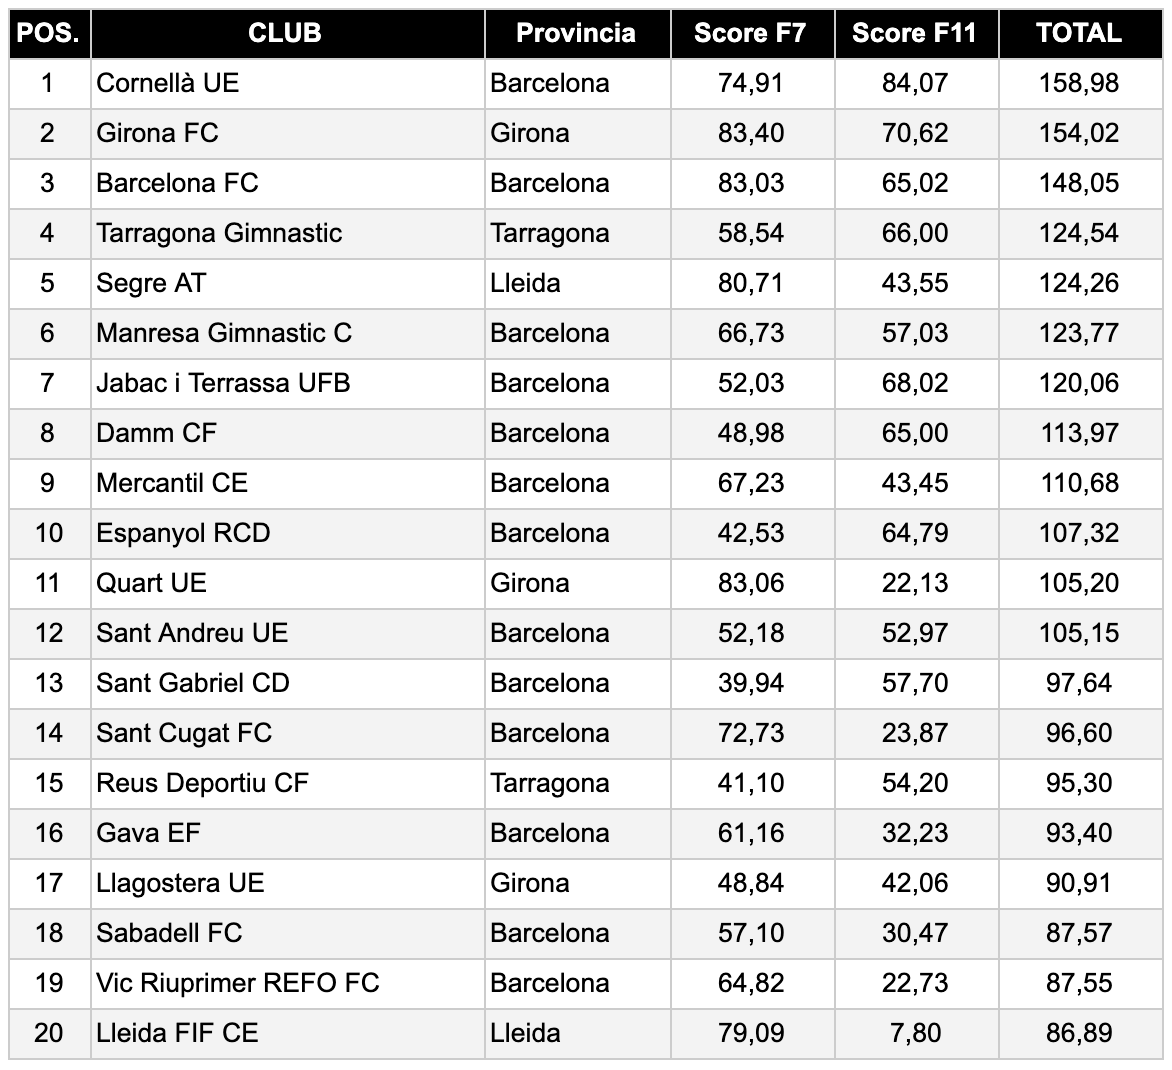 Pep Simo: mejores Clubs de fútbol base federado masculino de Cataluña. Ranking de la temporada 2018/2019 (Ranking Clubs 2018/2019)